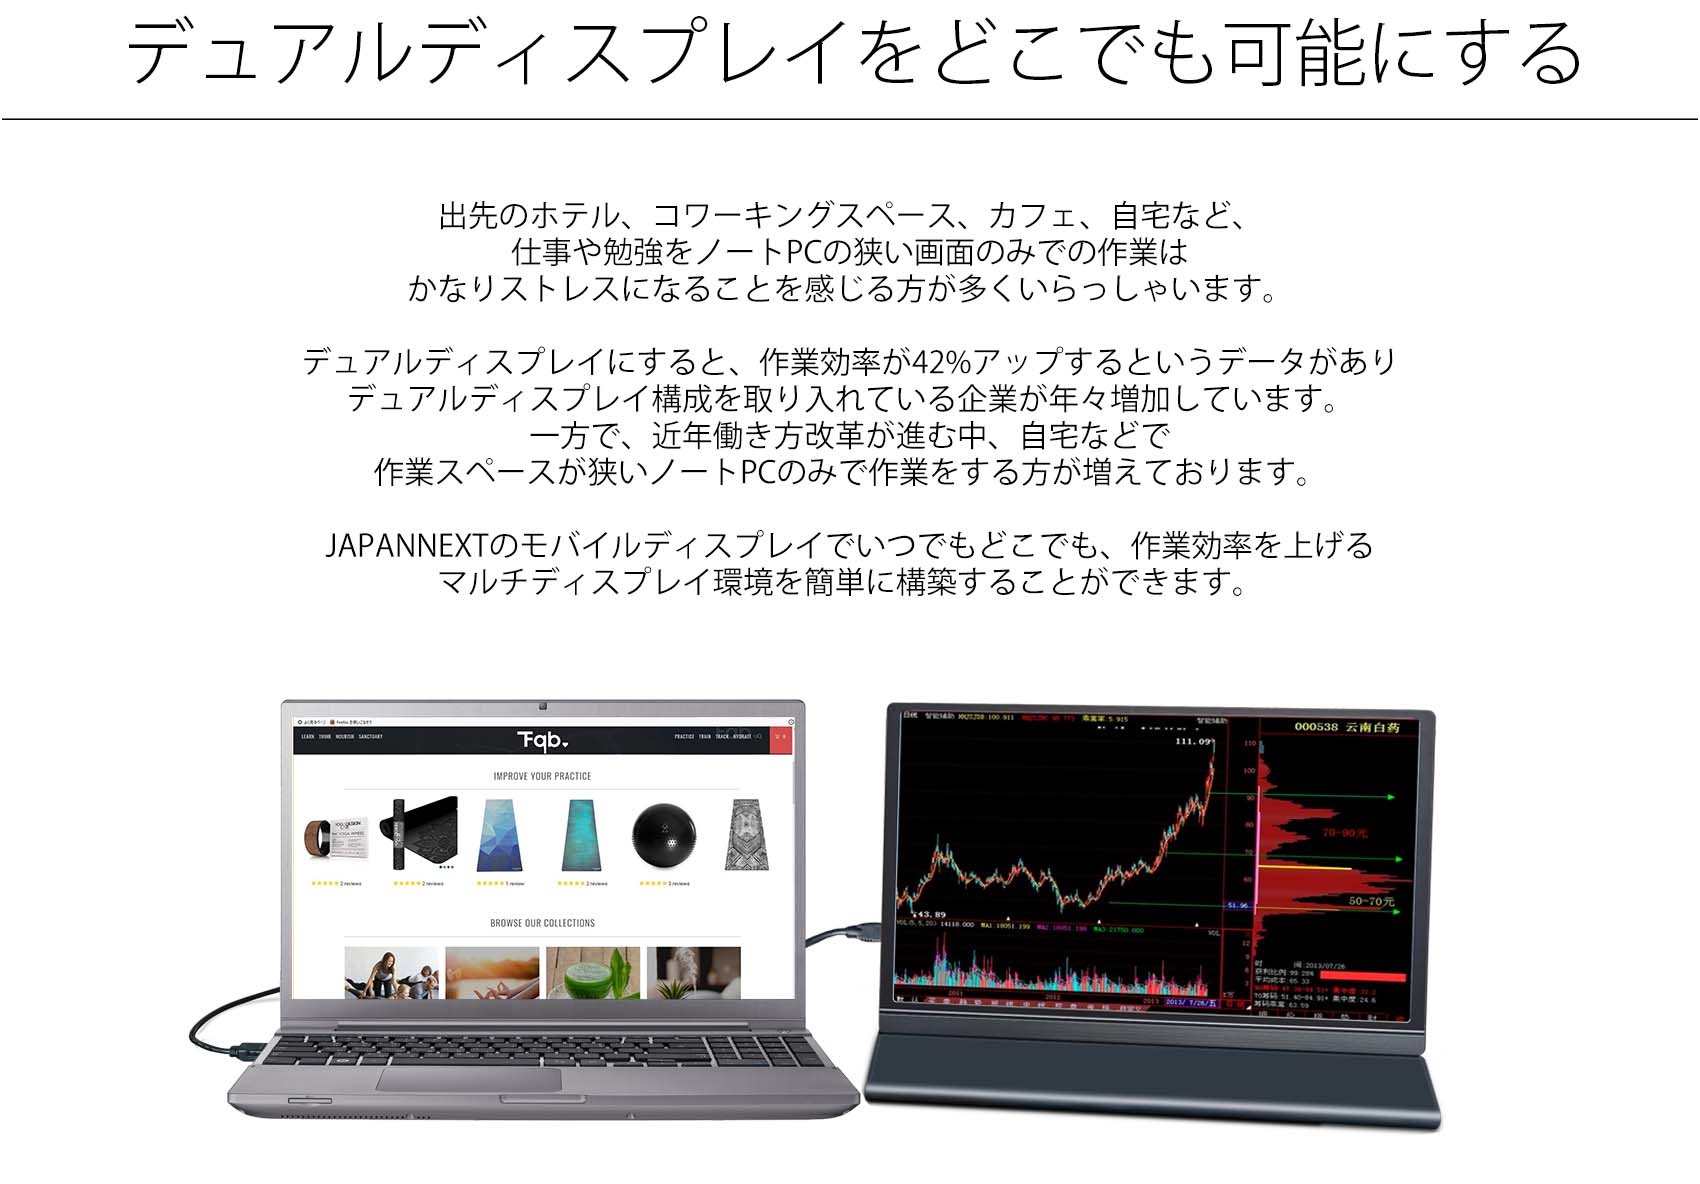 JAPANNEXT JN-MD-IPS1563FHDR (15.6型FHD モバイルディスプレイ /Type 